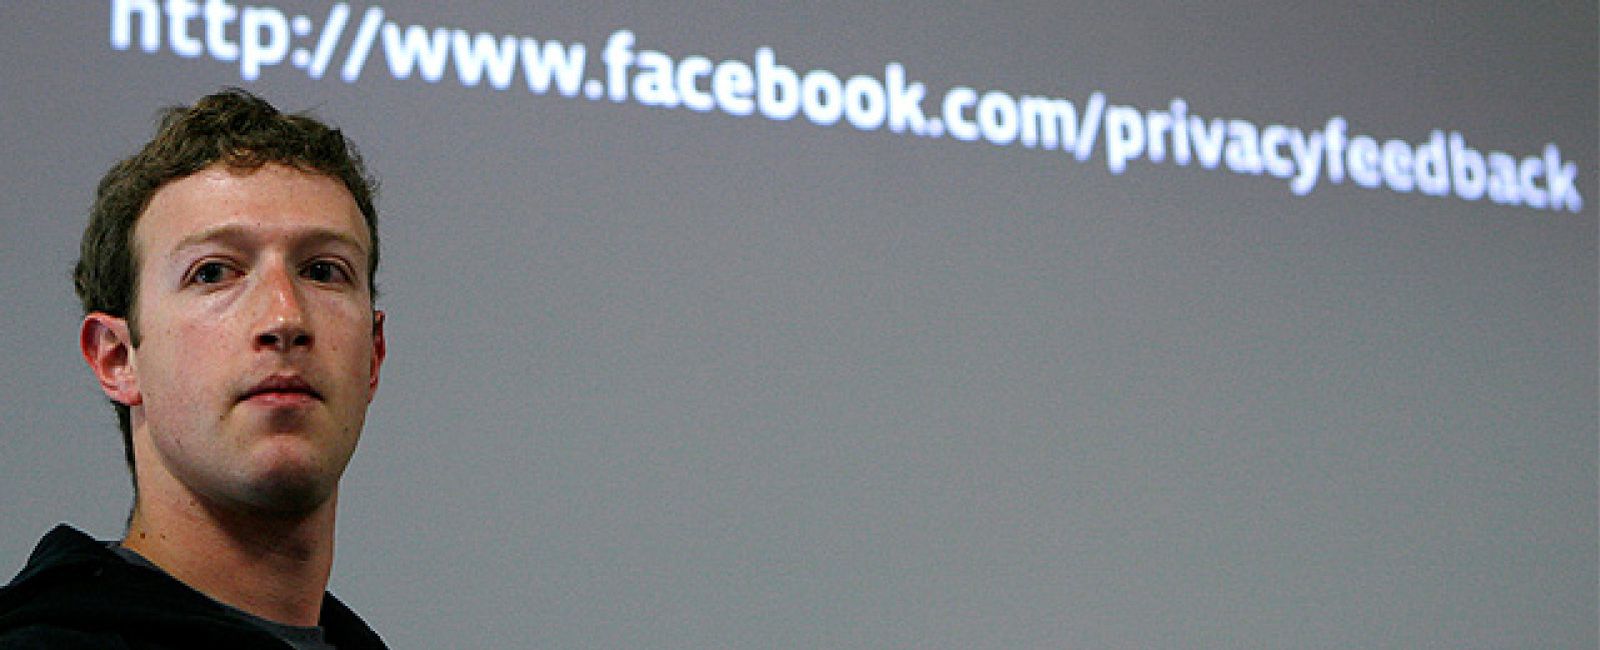 Foto: Facebook cae un 94% en beneficios y dispara las dudas sobre su modelo de negocio